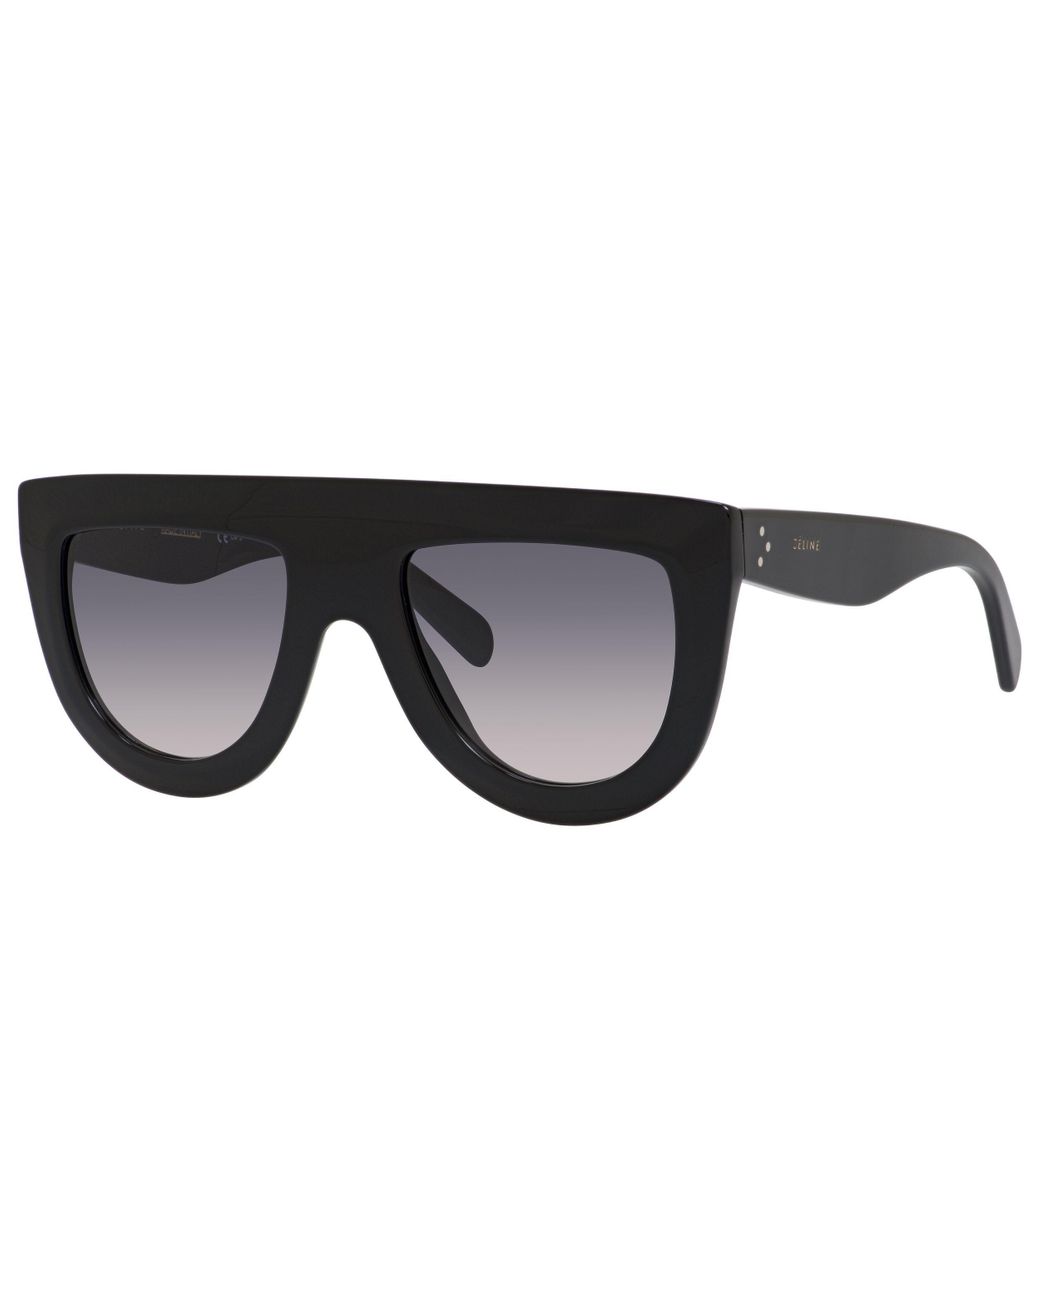 Celine Andrea 41398 Shield Sunglasses in Black | Lyst